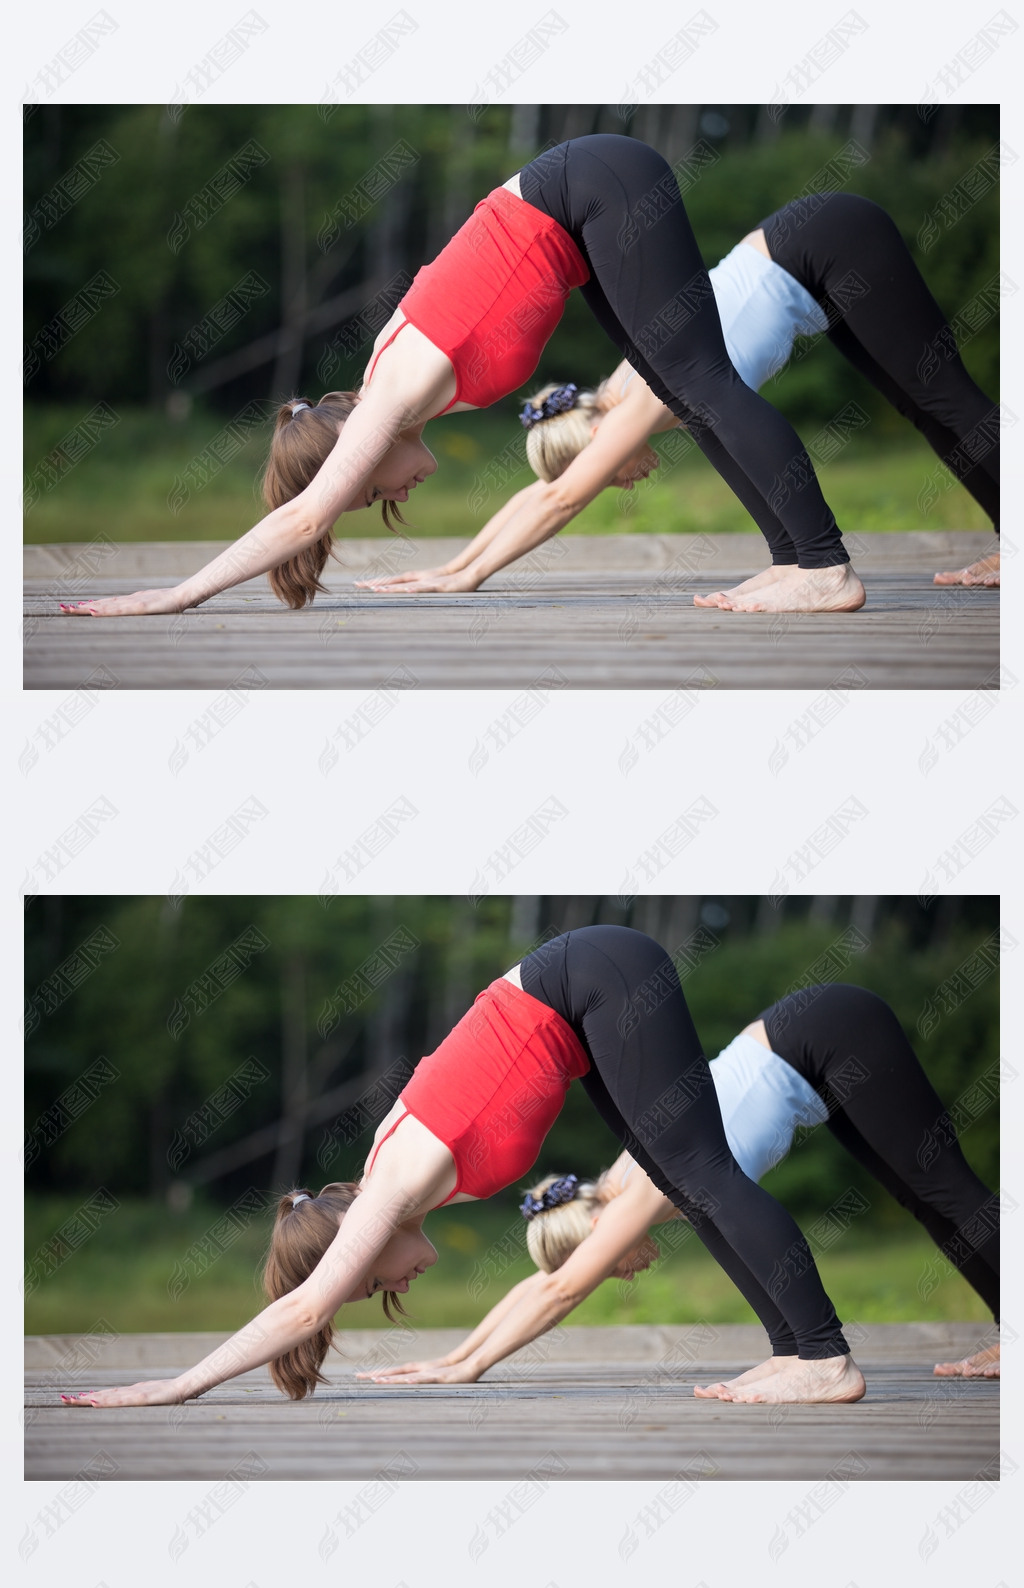 Yoga class: Downward facing dog pose